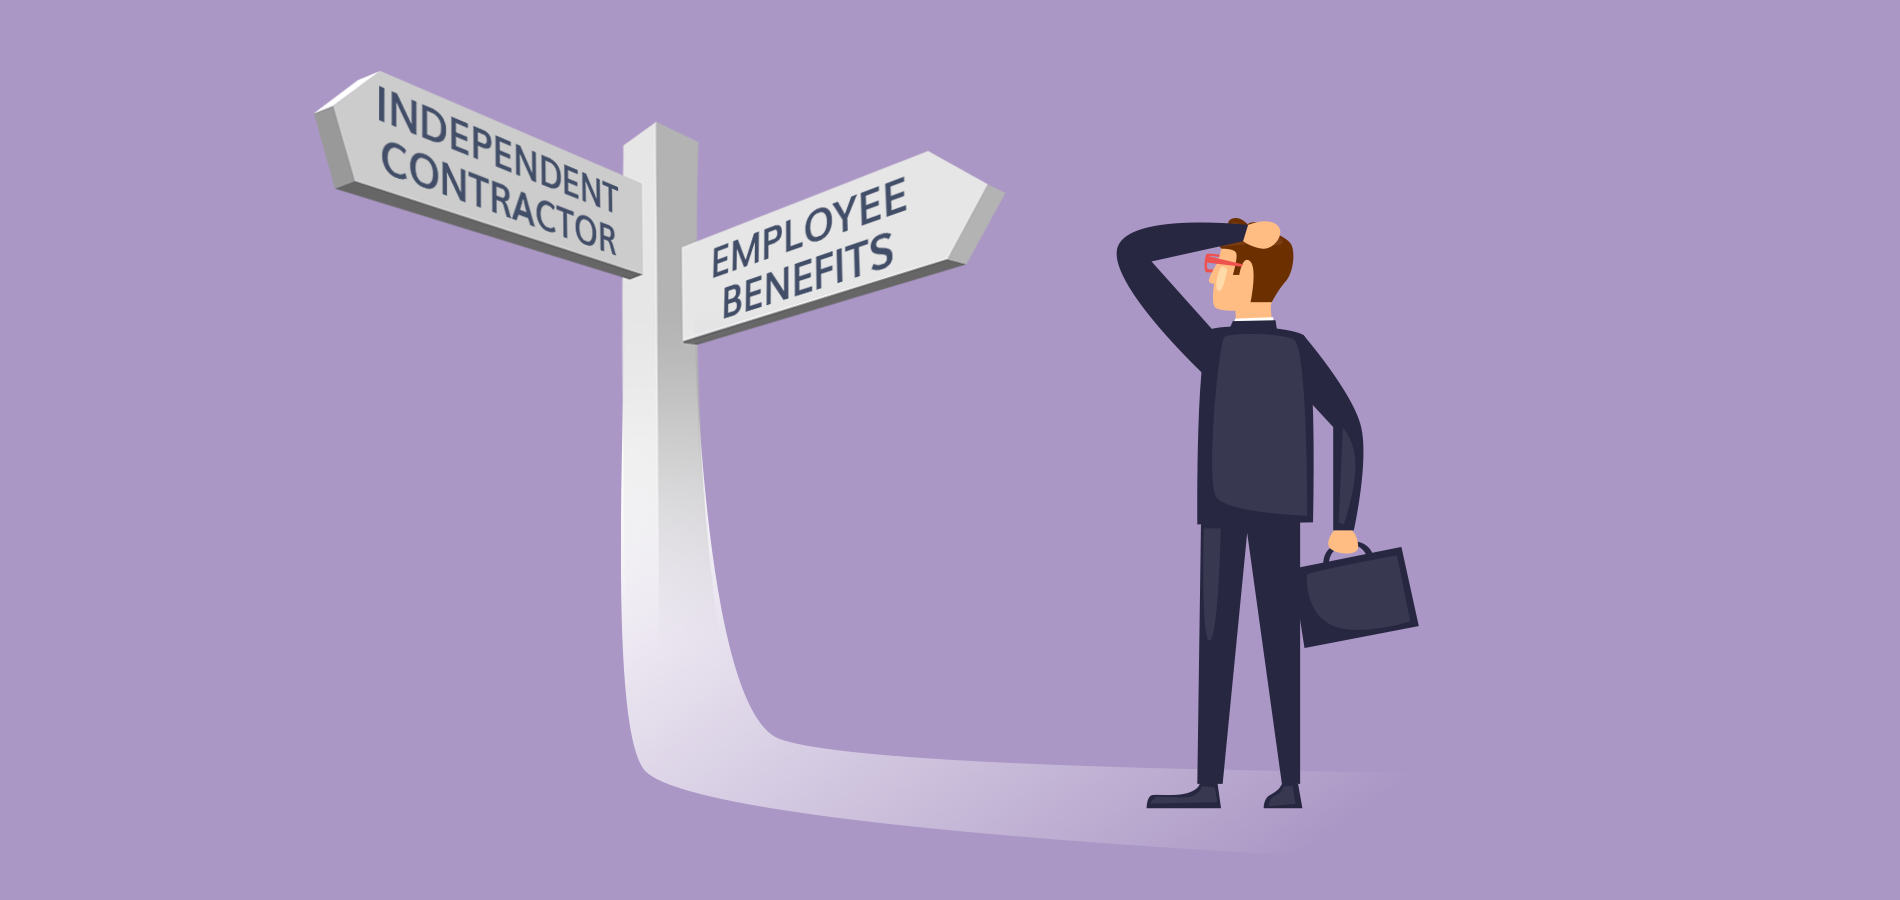 Employee benefits vs independent contractor